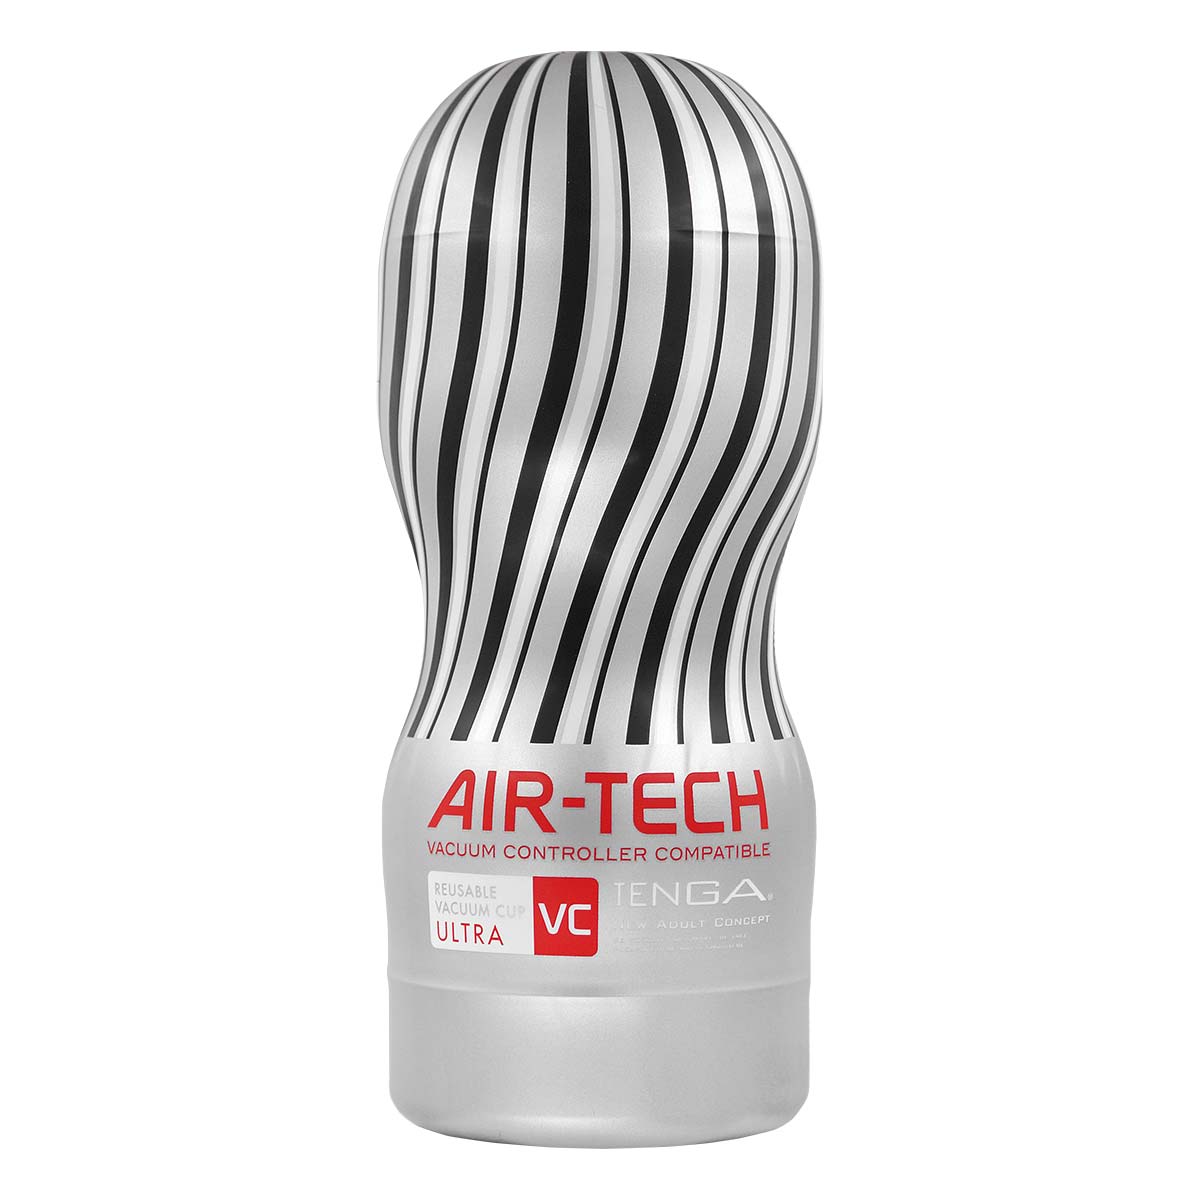 TENGA AIR-TECH Reusable Vacuum CUP VC ULTRA-thumb_2